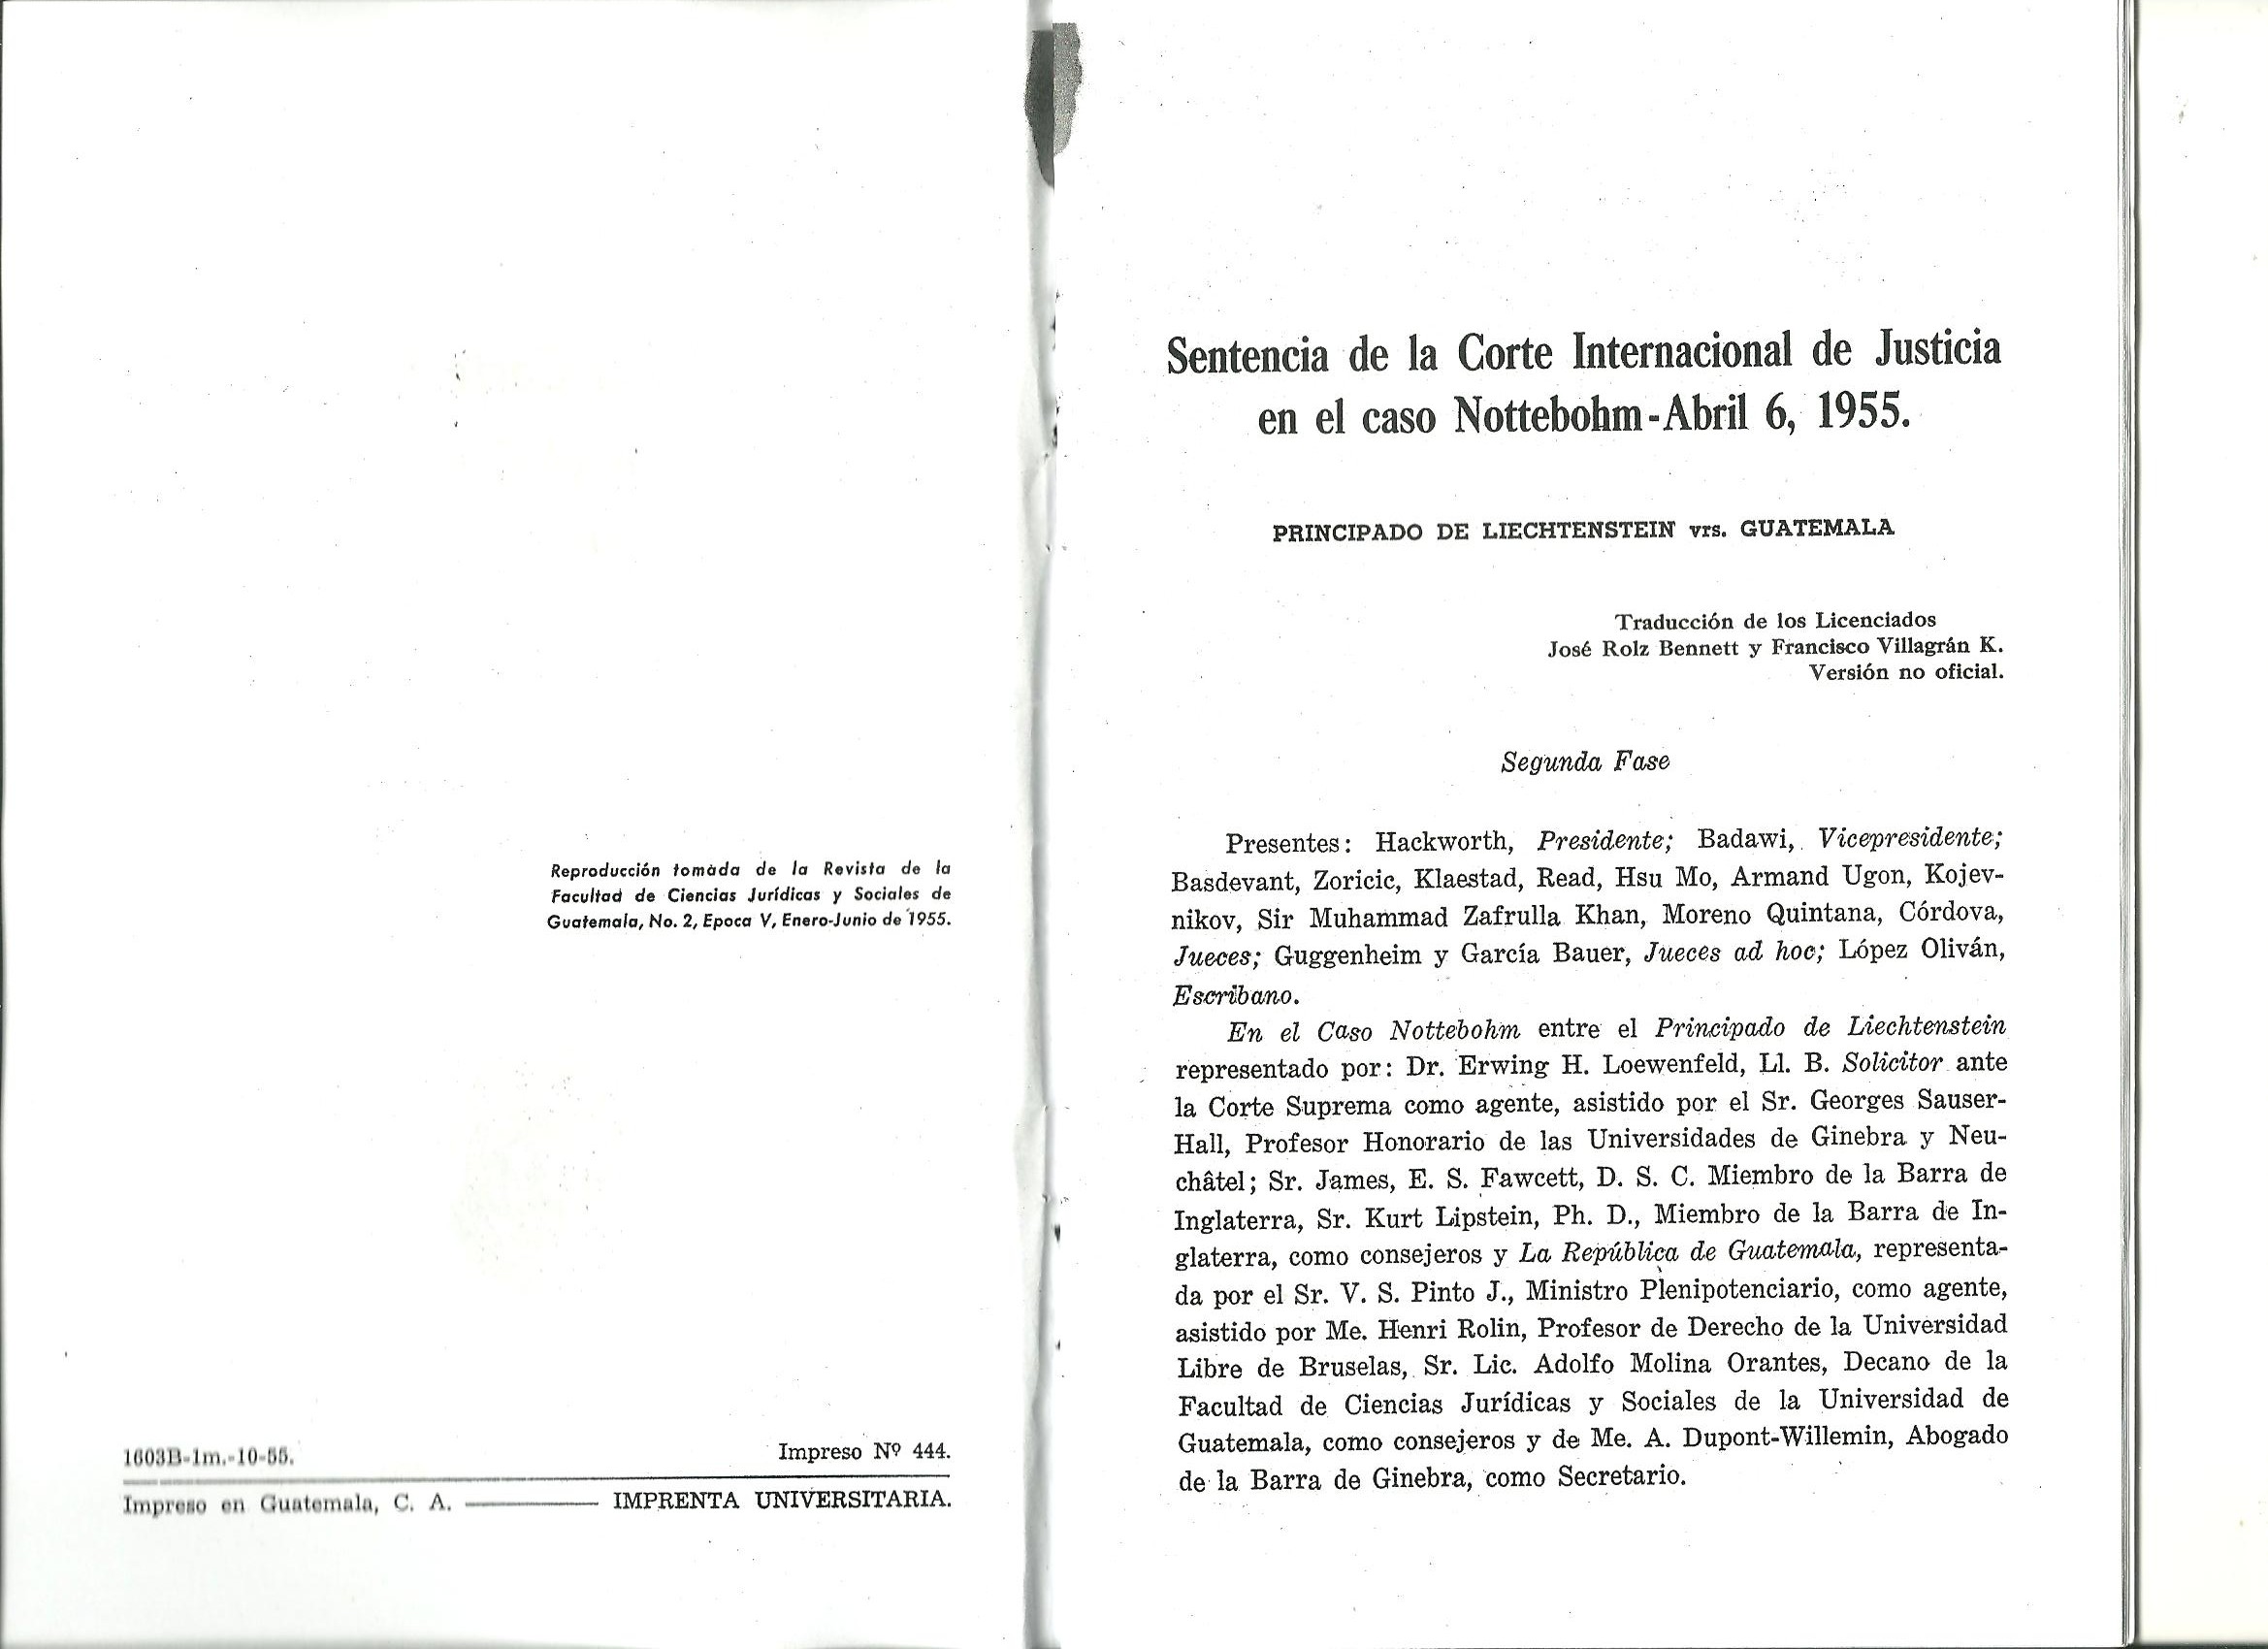 Sentencia de la Corte Internacional de Justicia en el Caso Nottebohm, Abril 6, 1955